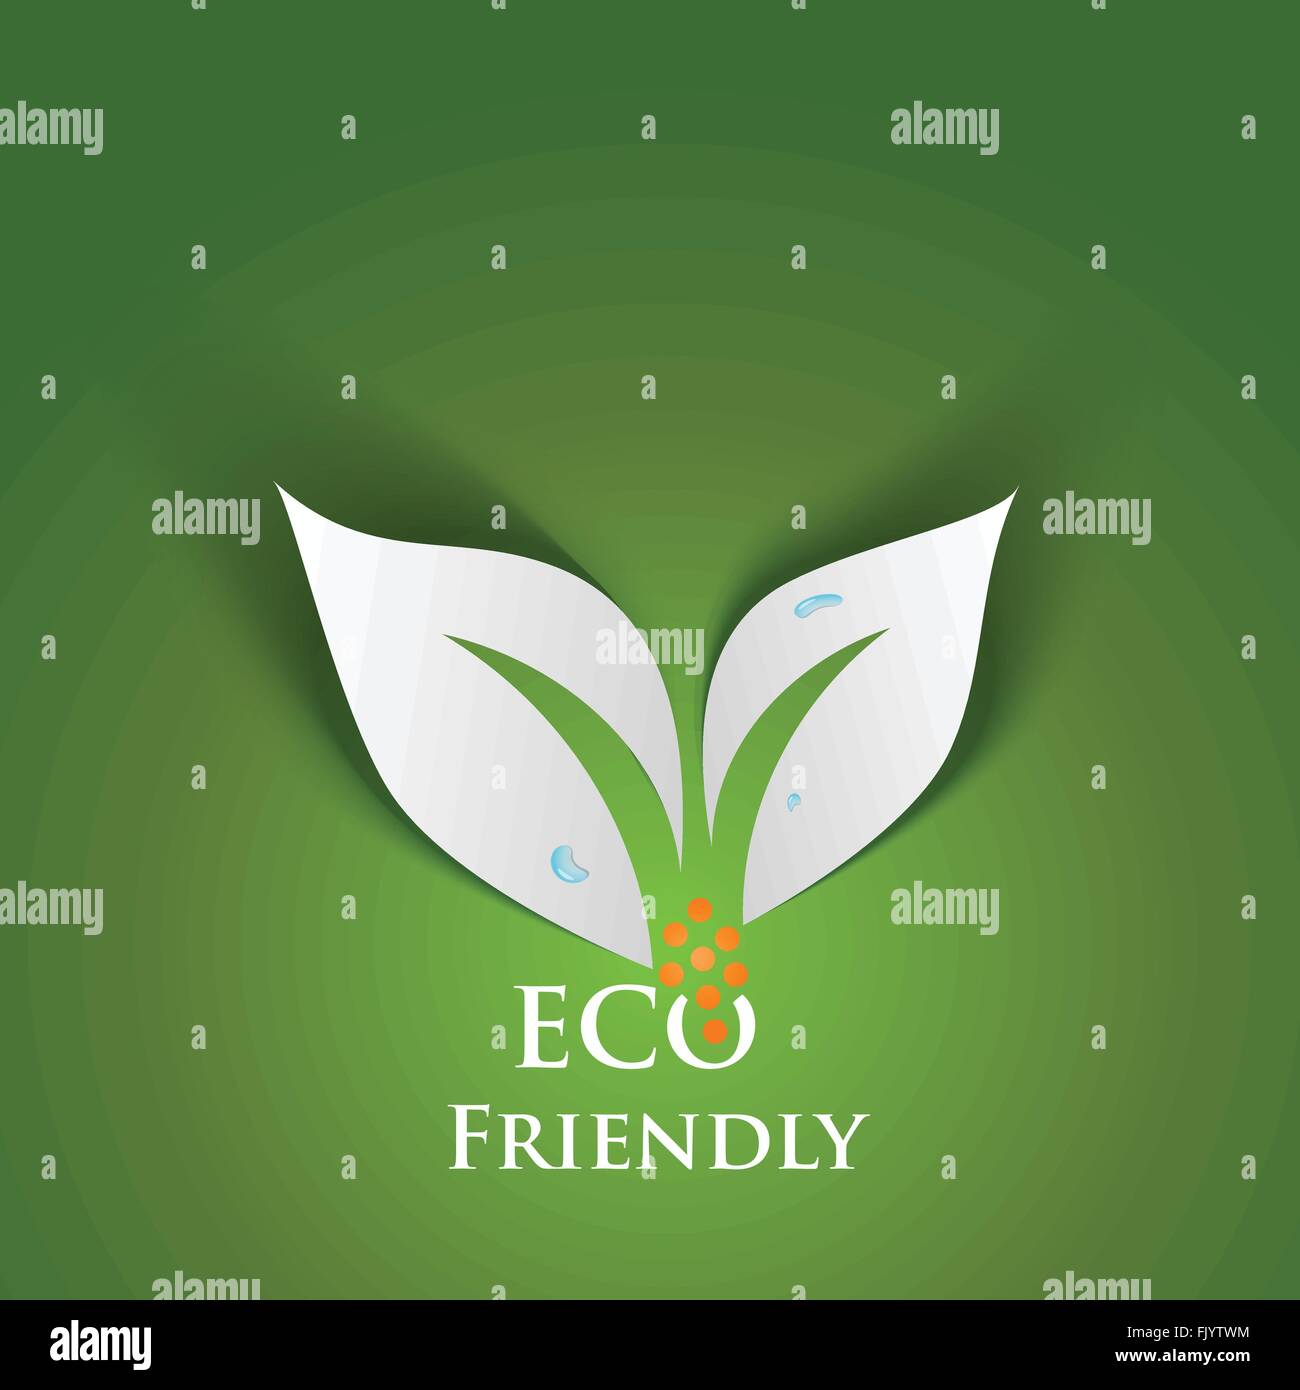 Eco Friendly concept Stock Vector